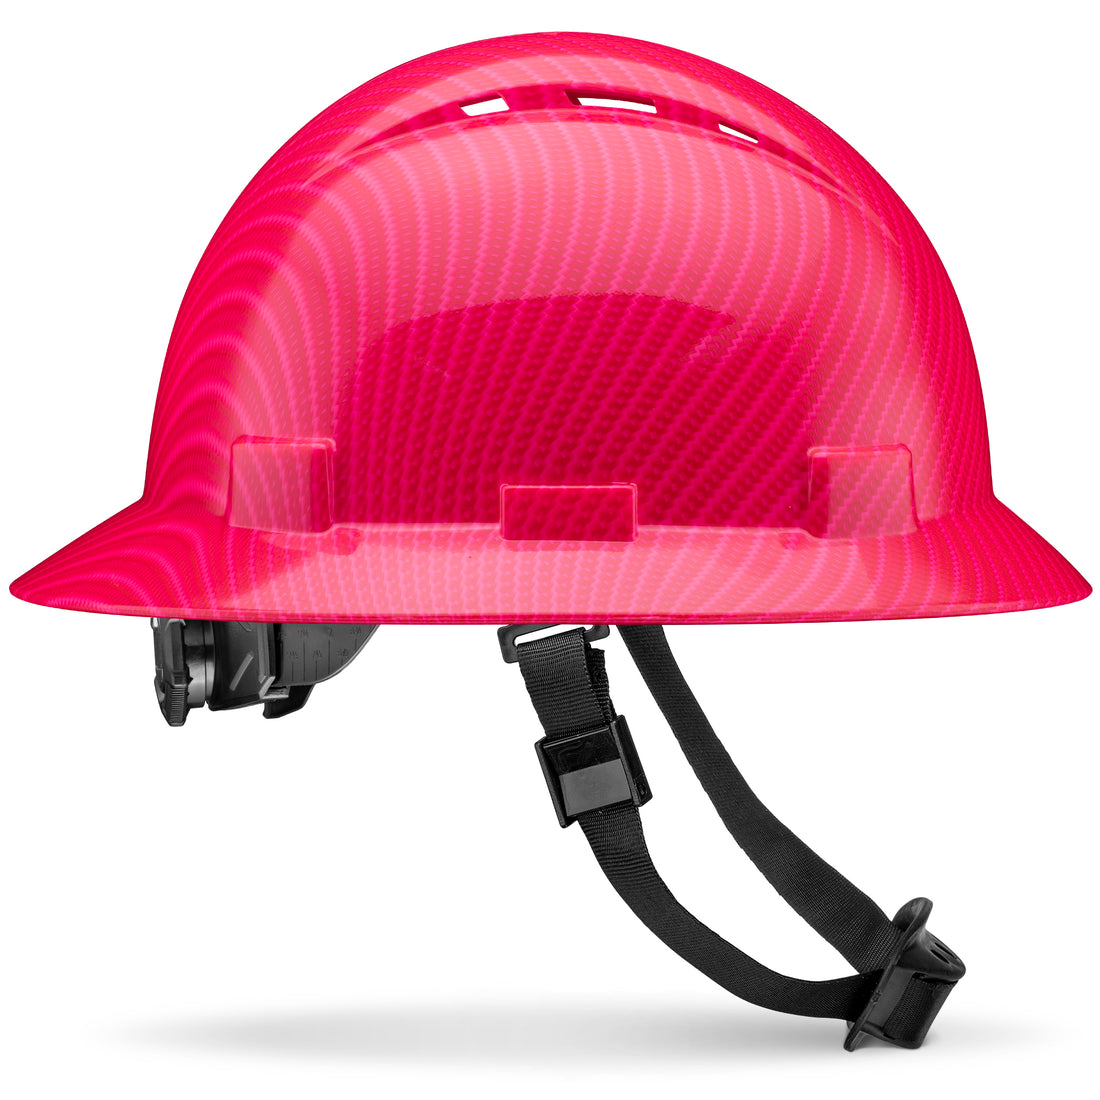 Full Brim Pink Carbon Fiber Design Carbon Fiber Design Gloss Finish Vented Hard Hat